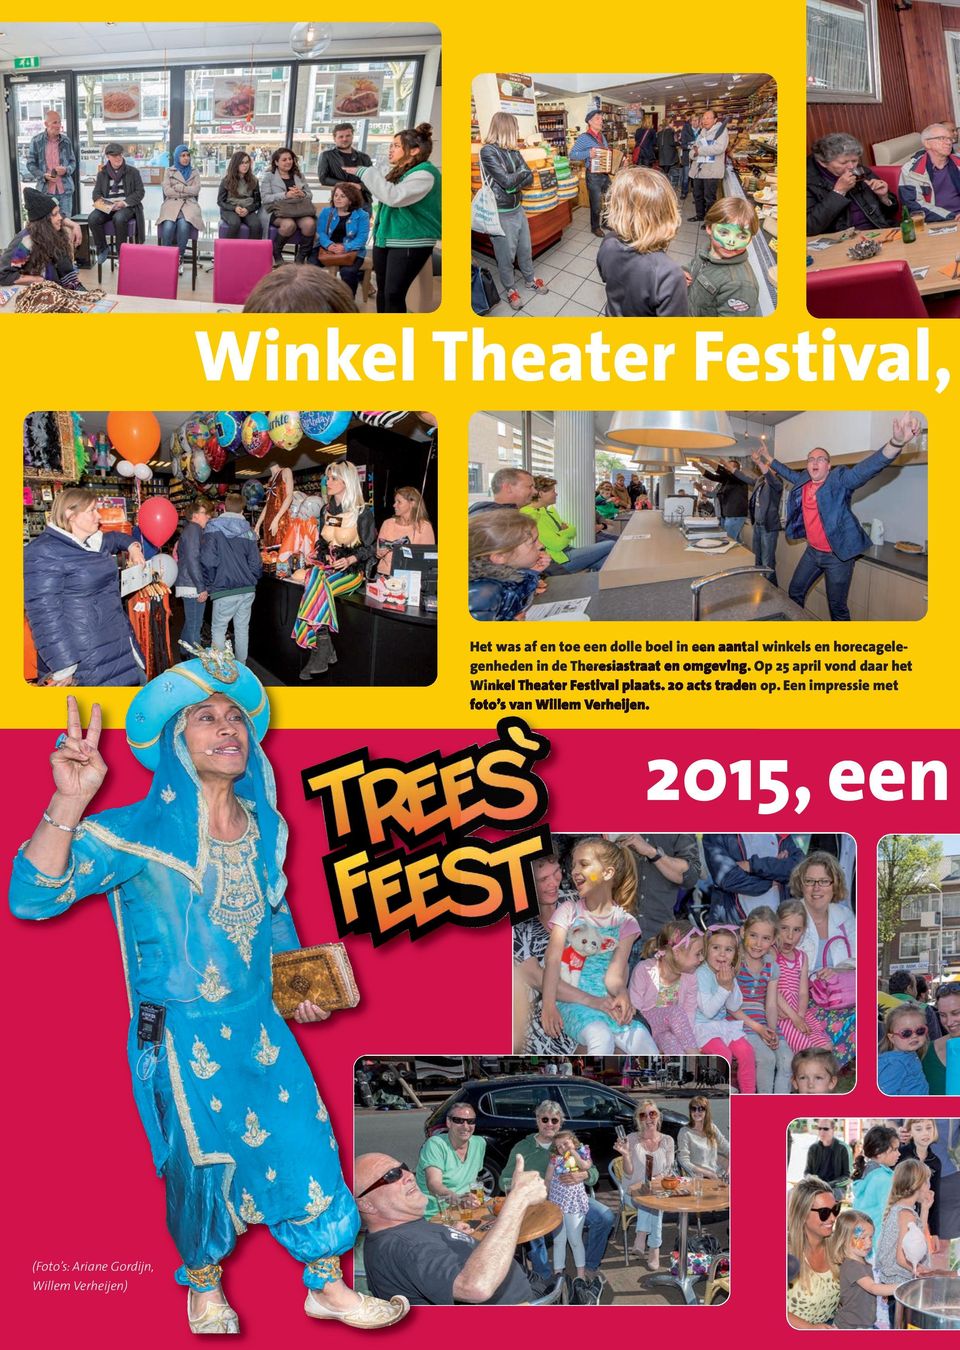 Op 25 april vond daar het Winkel Theater Festival plaats. 20 acts traden op.